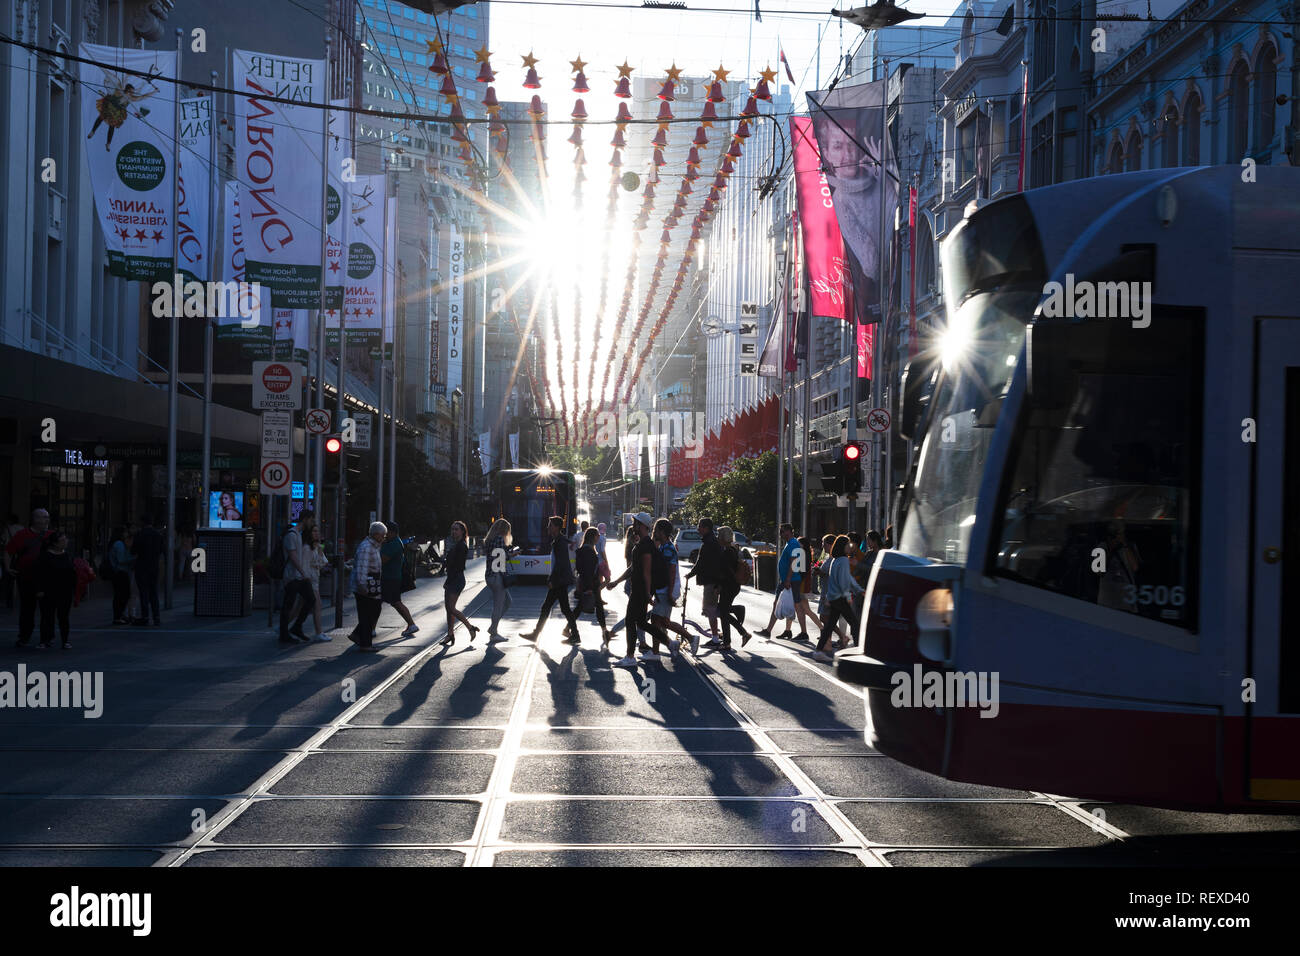 Regardant vers le bas du Melbourne Bourke Street Mall au coucher du soleil, avec les piétons et le tramway. Banque D'Images